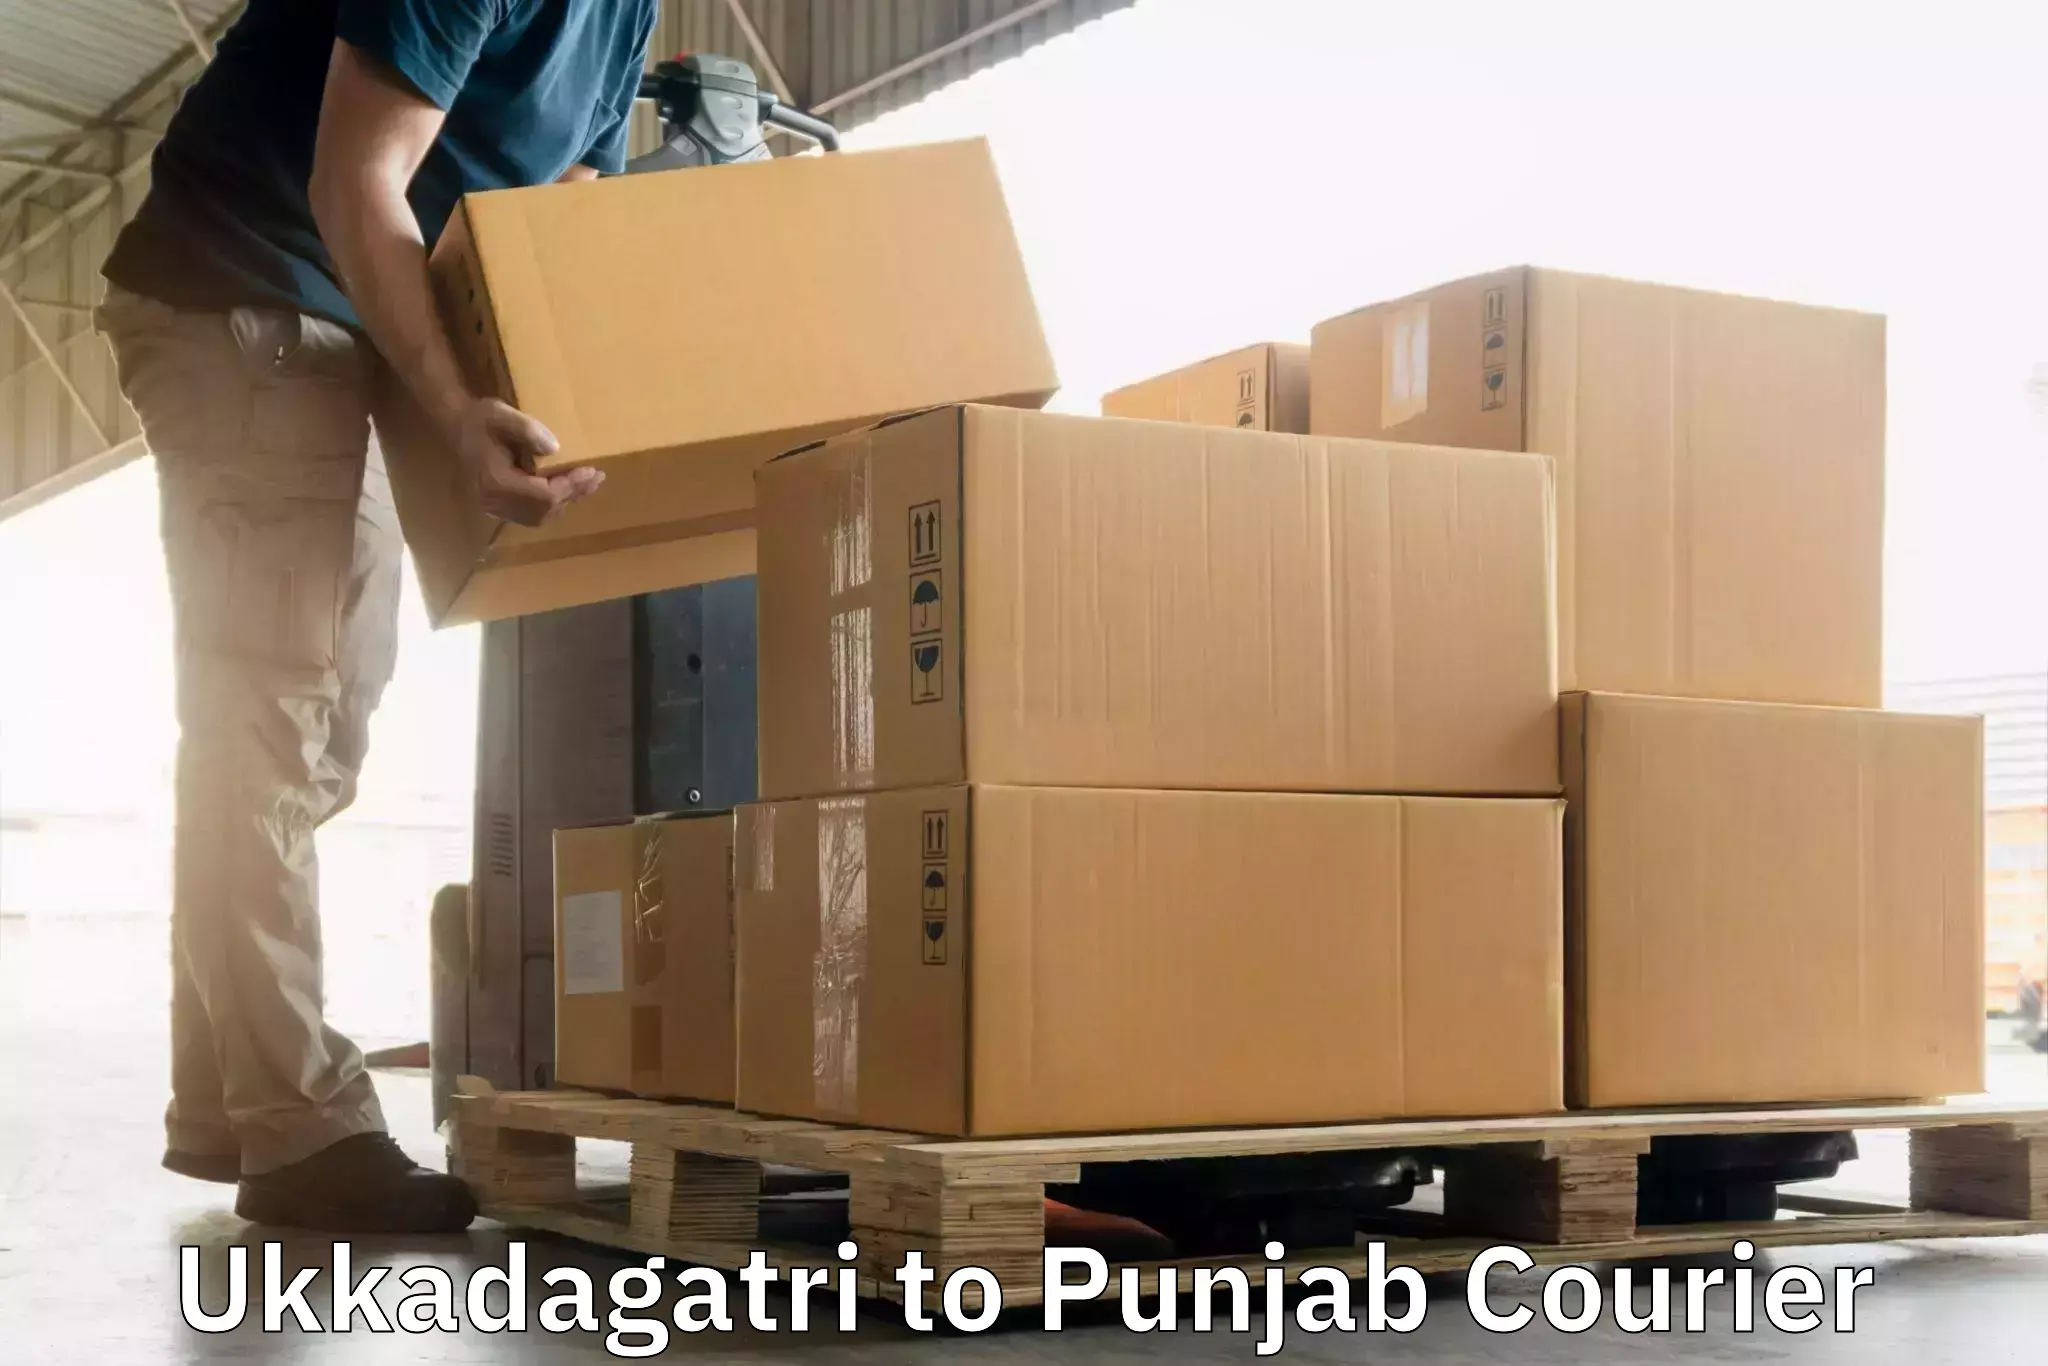 Customizable delivery plans Ukkadagatri to Central University of Punjab Bathinda